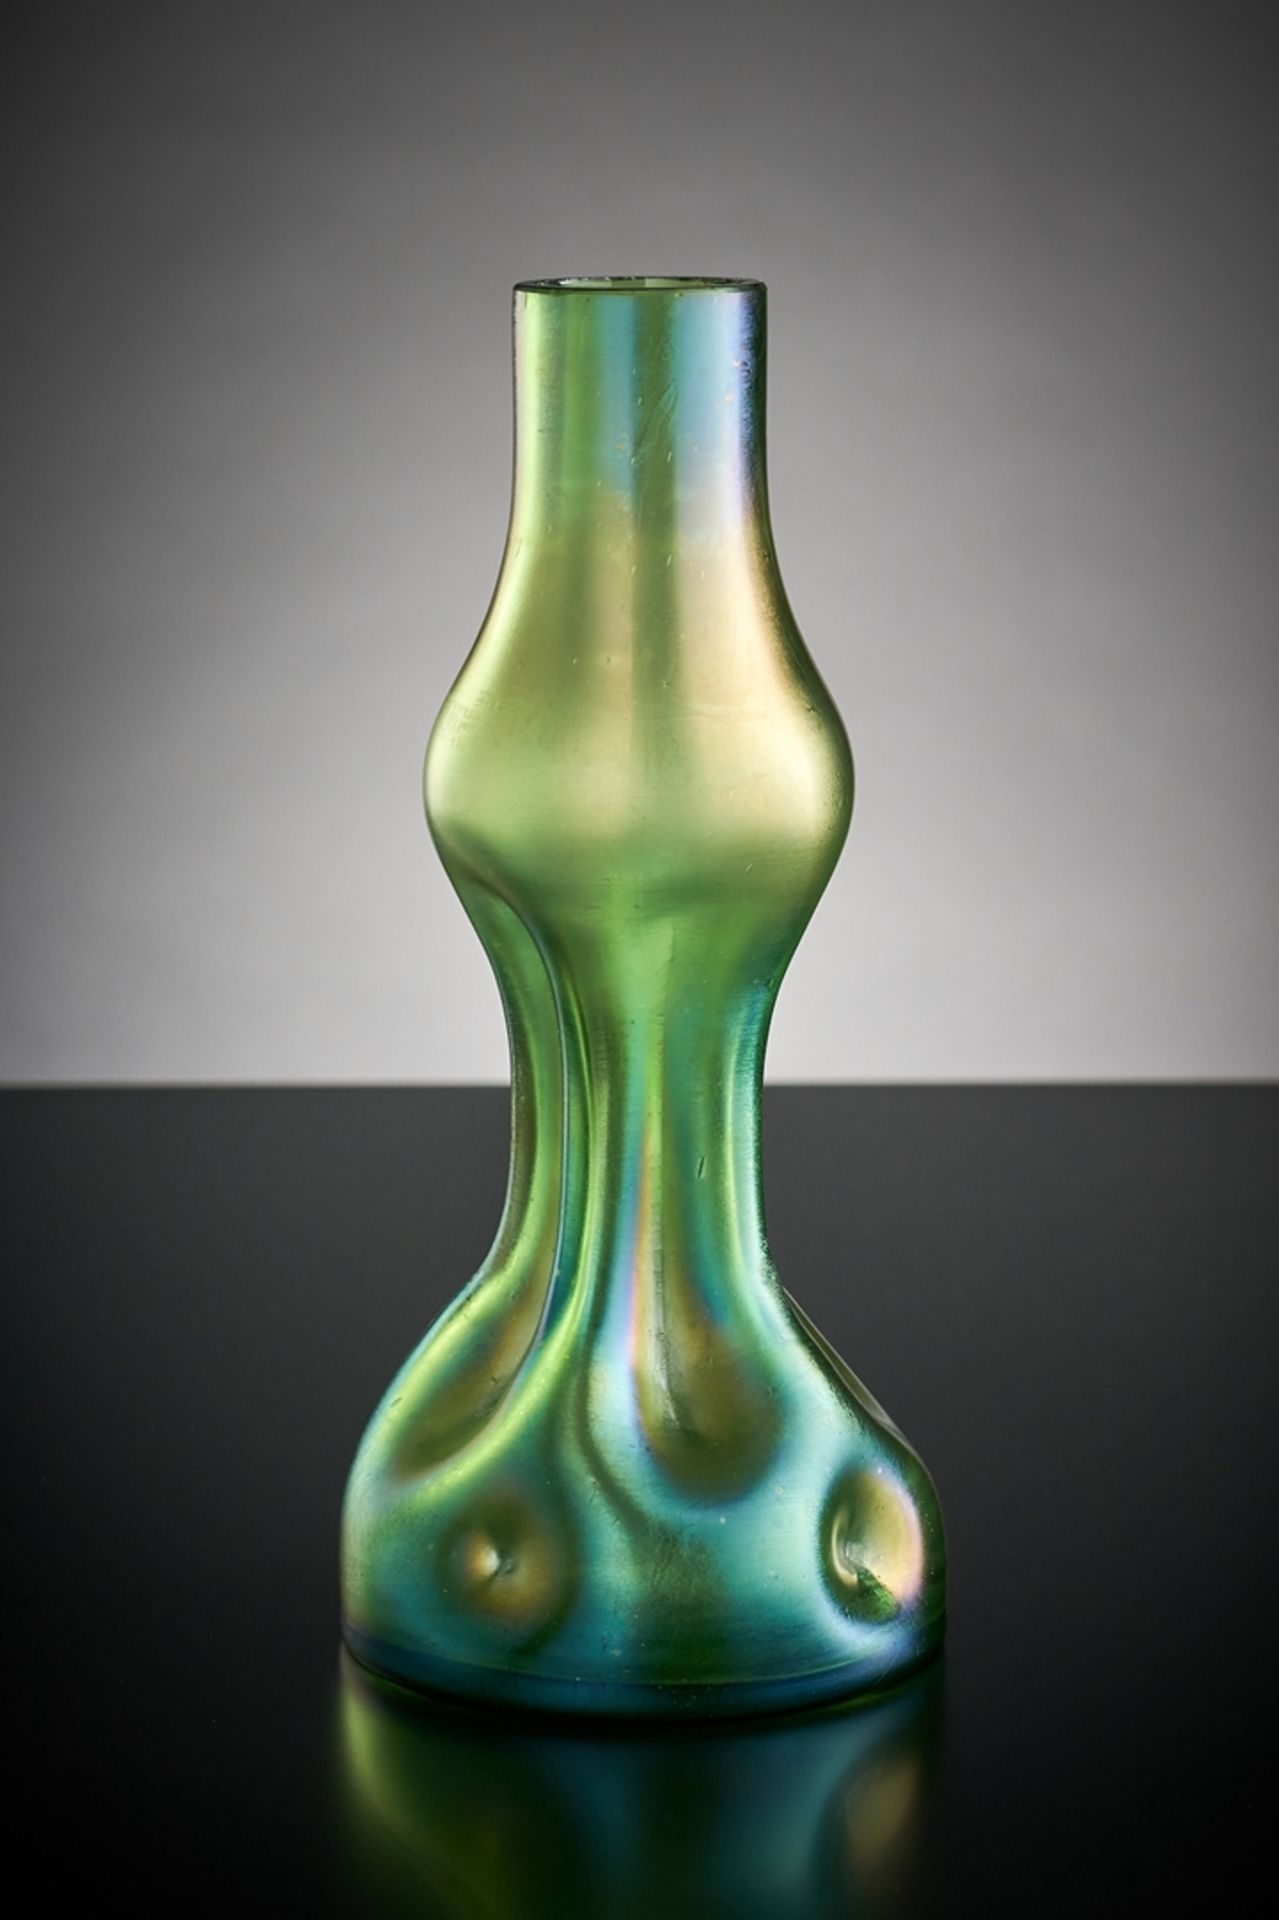 Vase.  Gedellter Korpus. Grün, matt irisiert. Wilh. Kralik, Eleonorenhain, um 1900. H 18 cm